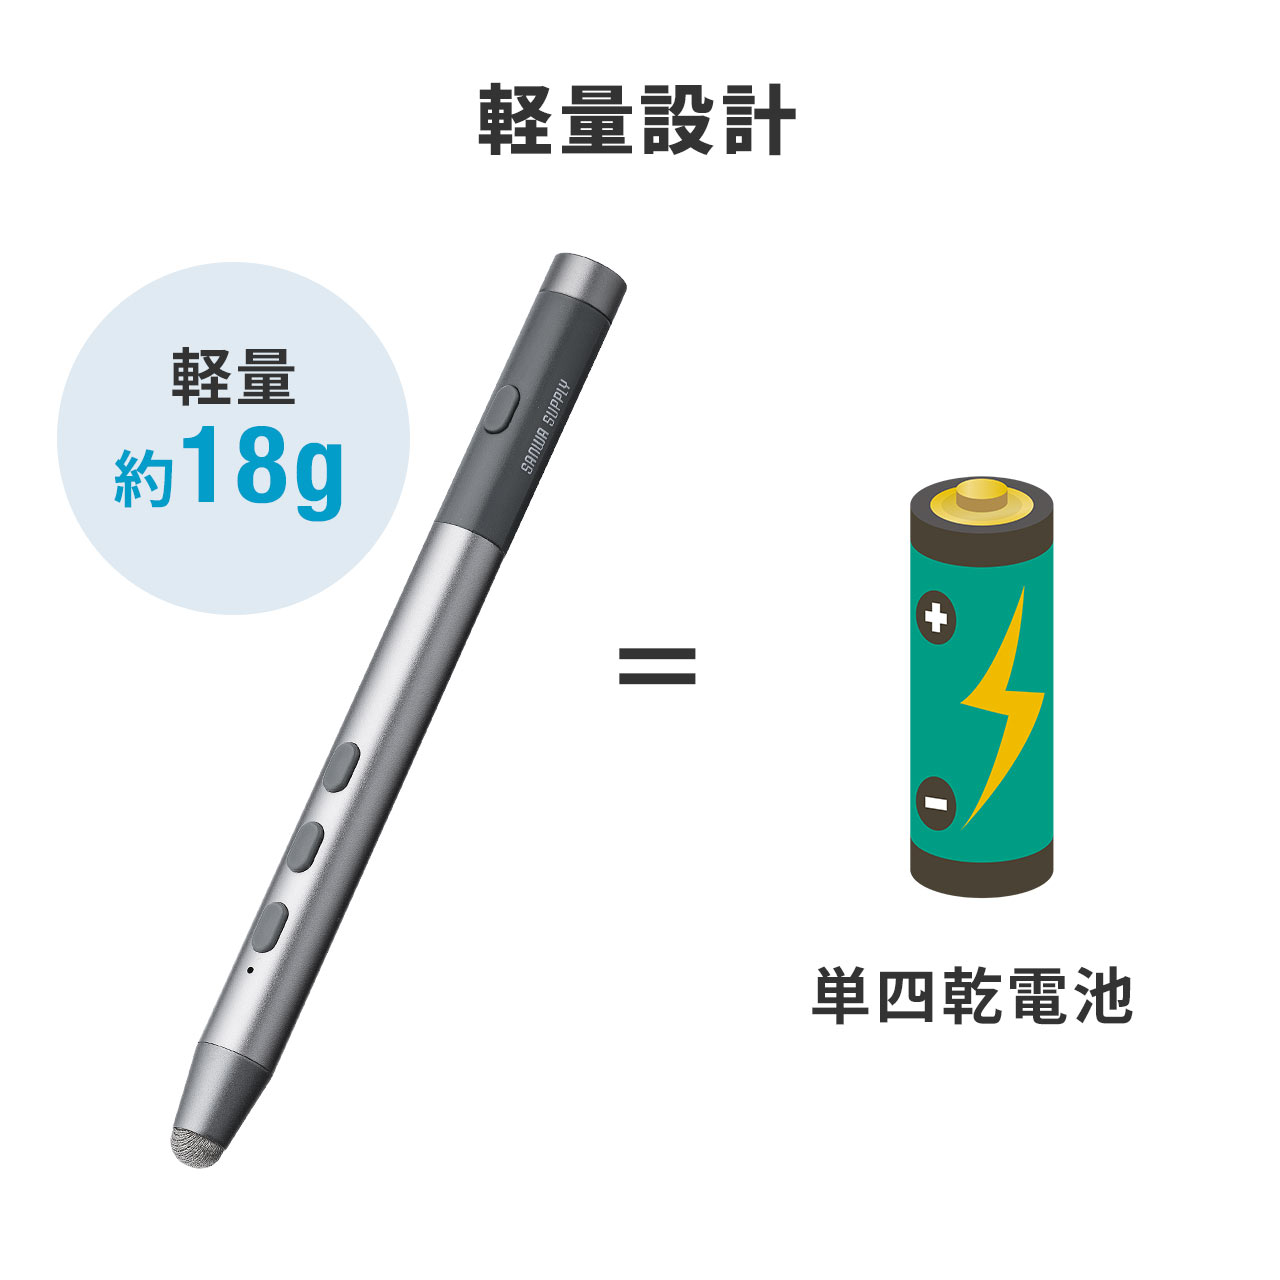 ワイヤレスプレゼンター ソフトウェアポインタ プレゼンアイテム 充電式 タッチペン付き レーザーなし 電池がいらない 200-LPP046の販売商品  通販ならサンワダイレクト